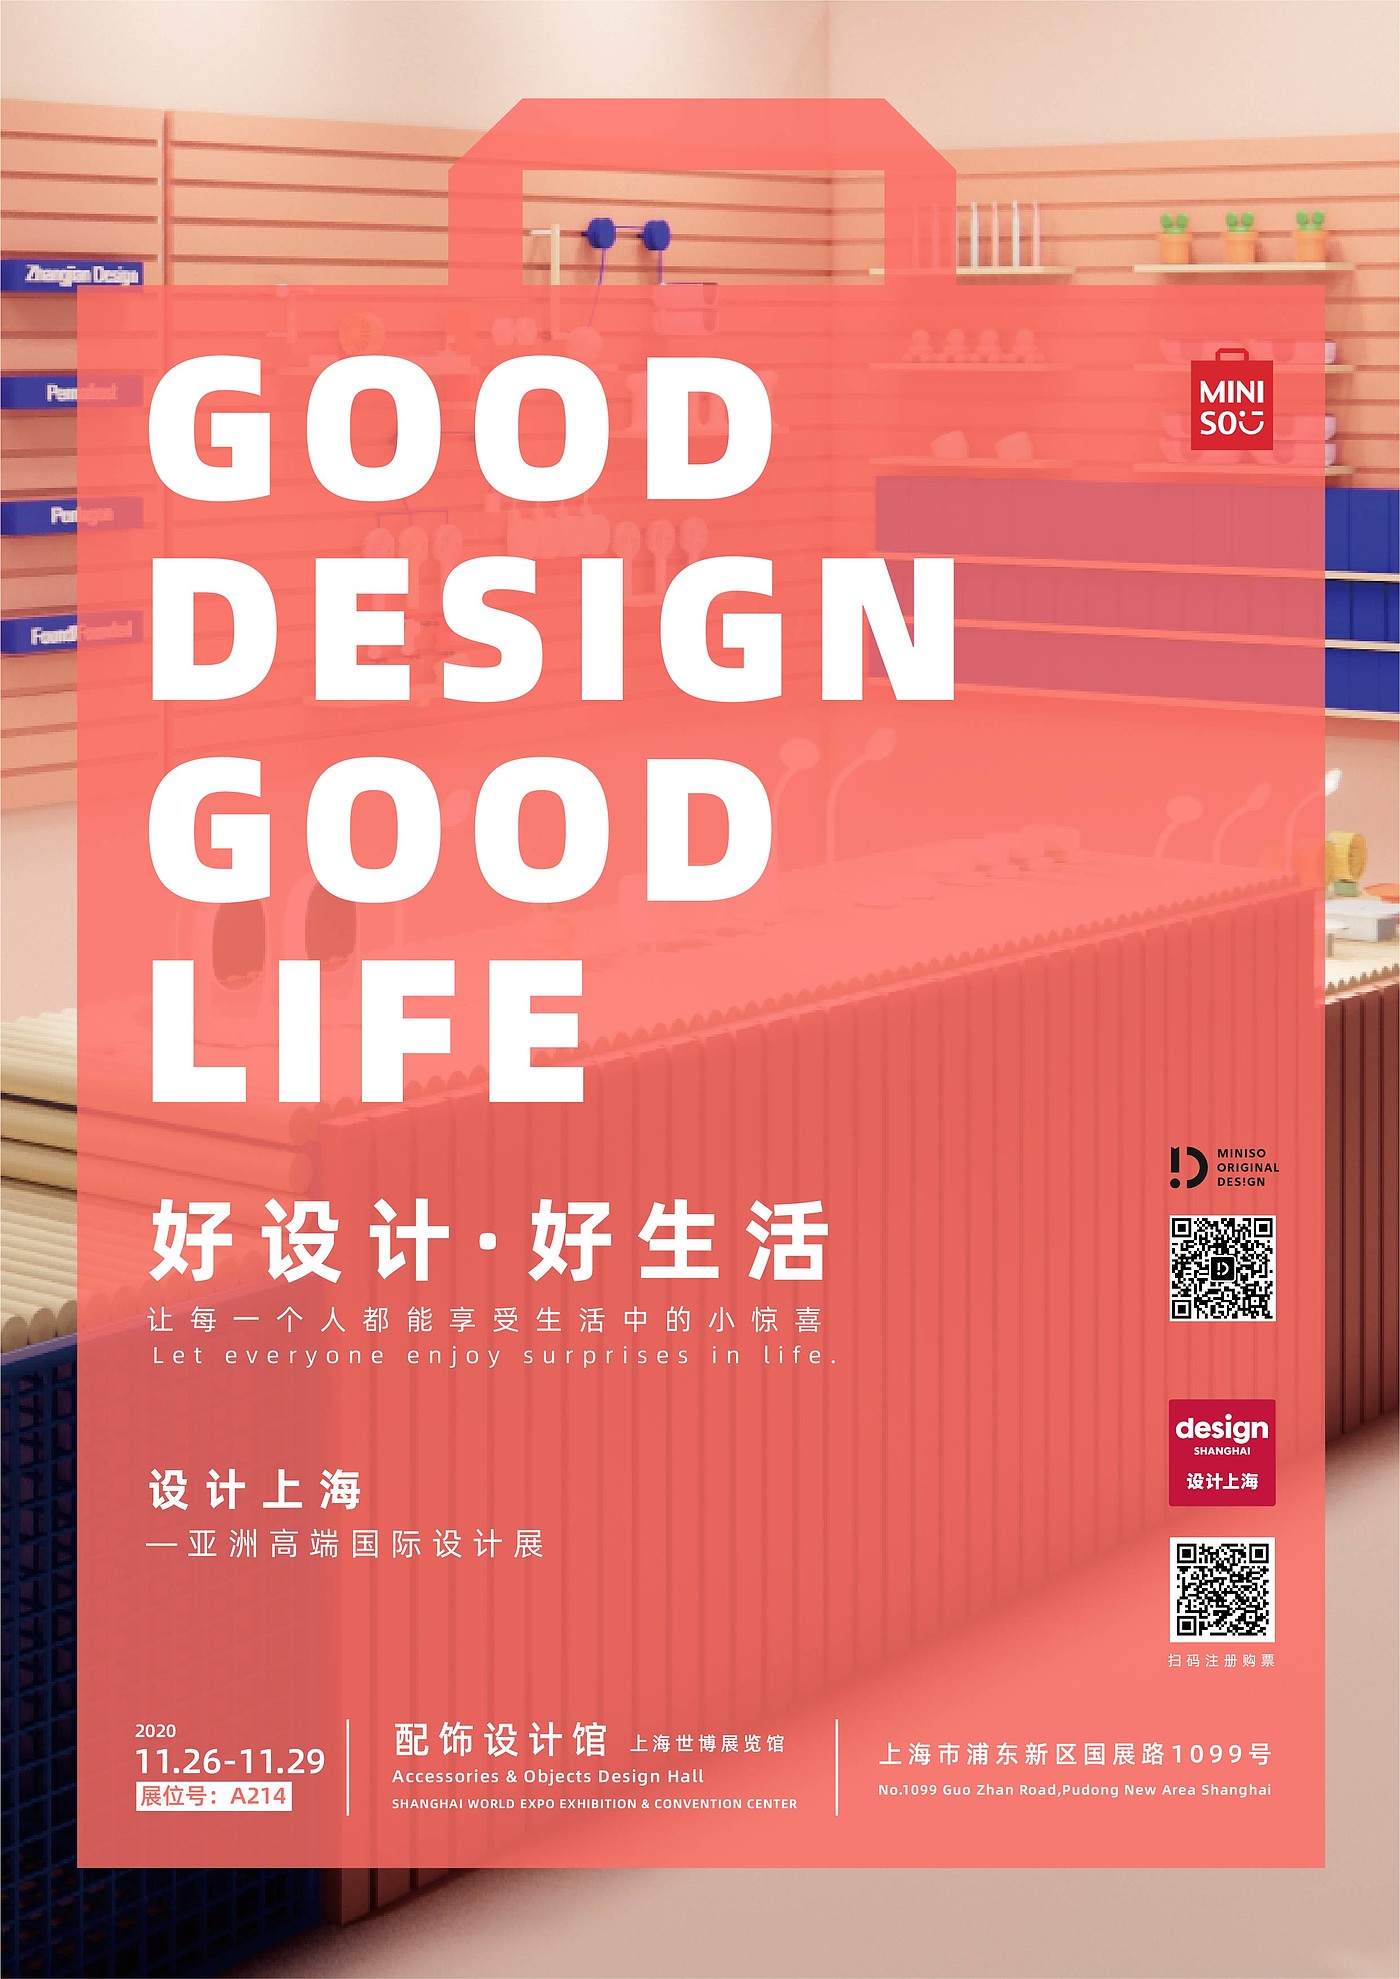 原创设计，名创优品，设计上海，生活好物，展览，